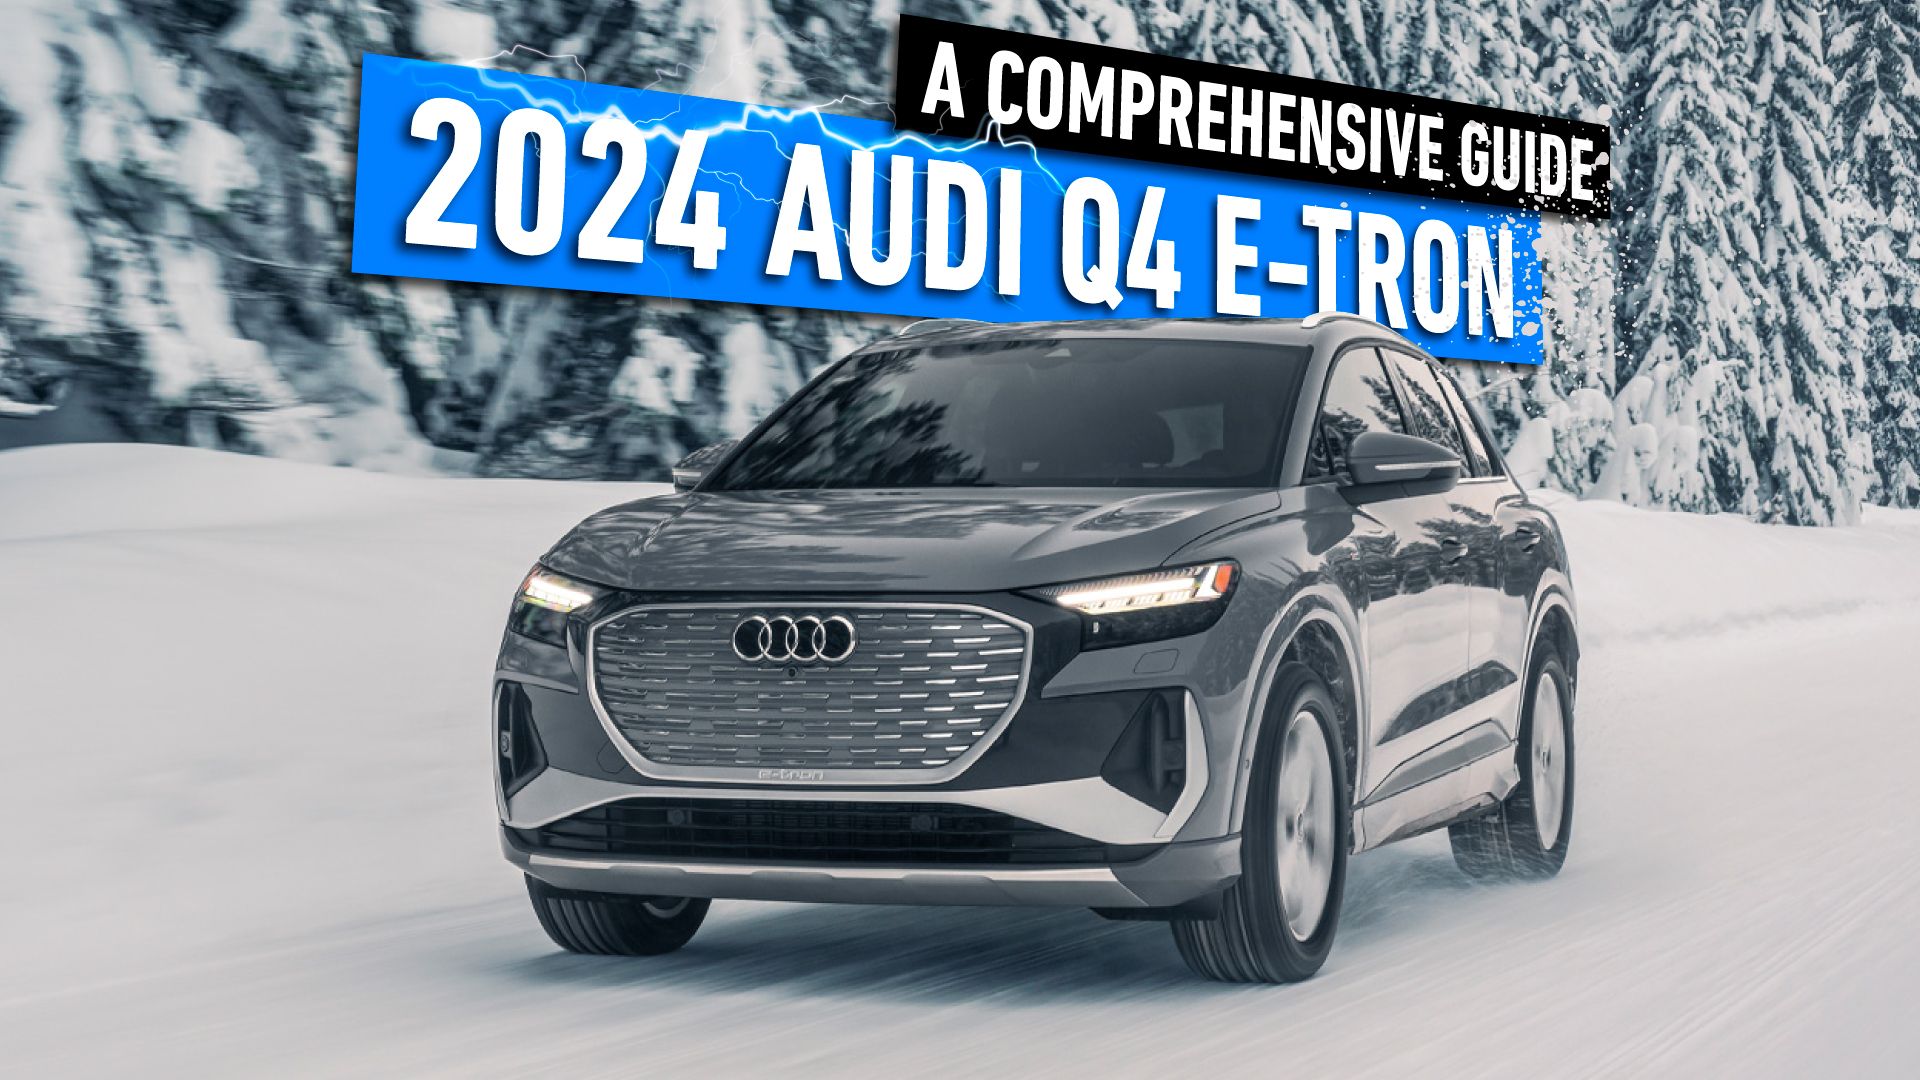 2024-Audi-Q4-e-tron-A-Comprehensive-Guide